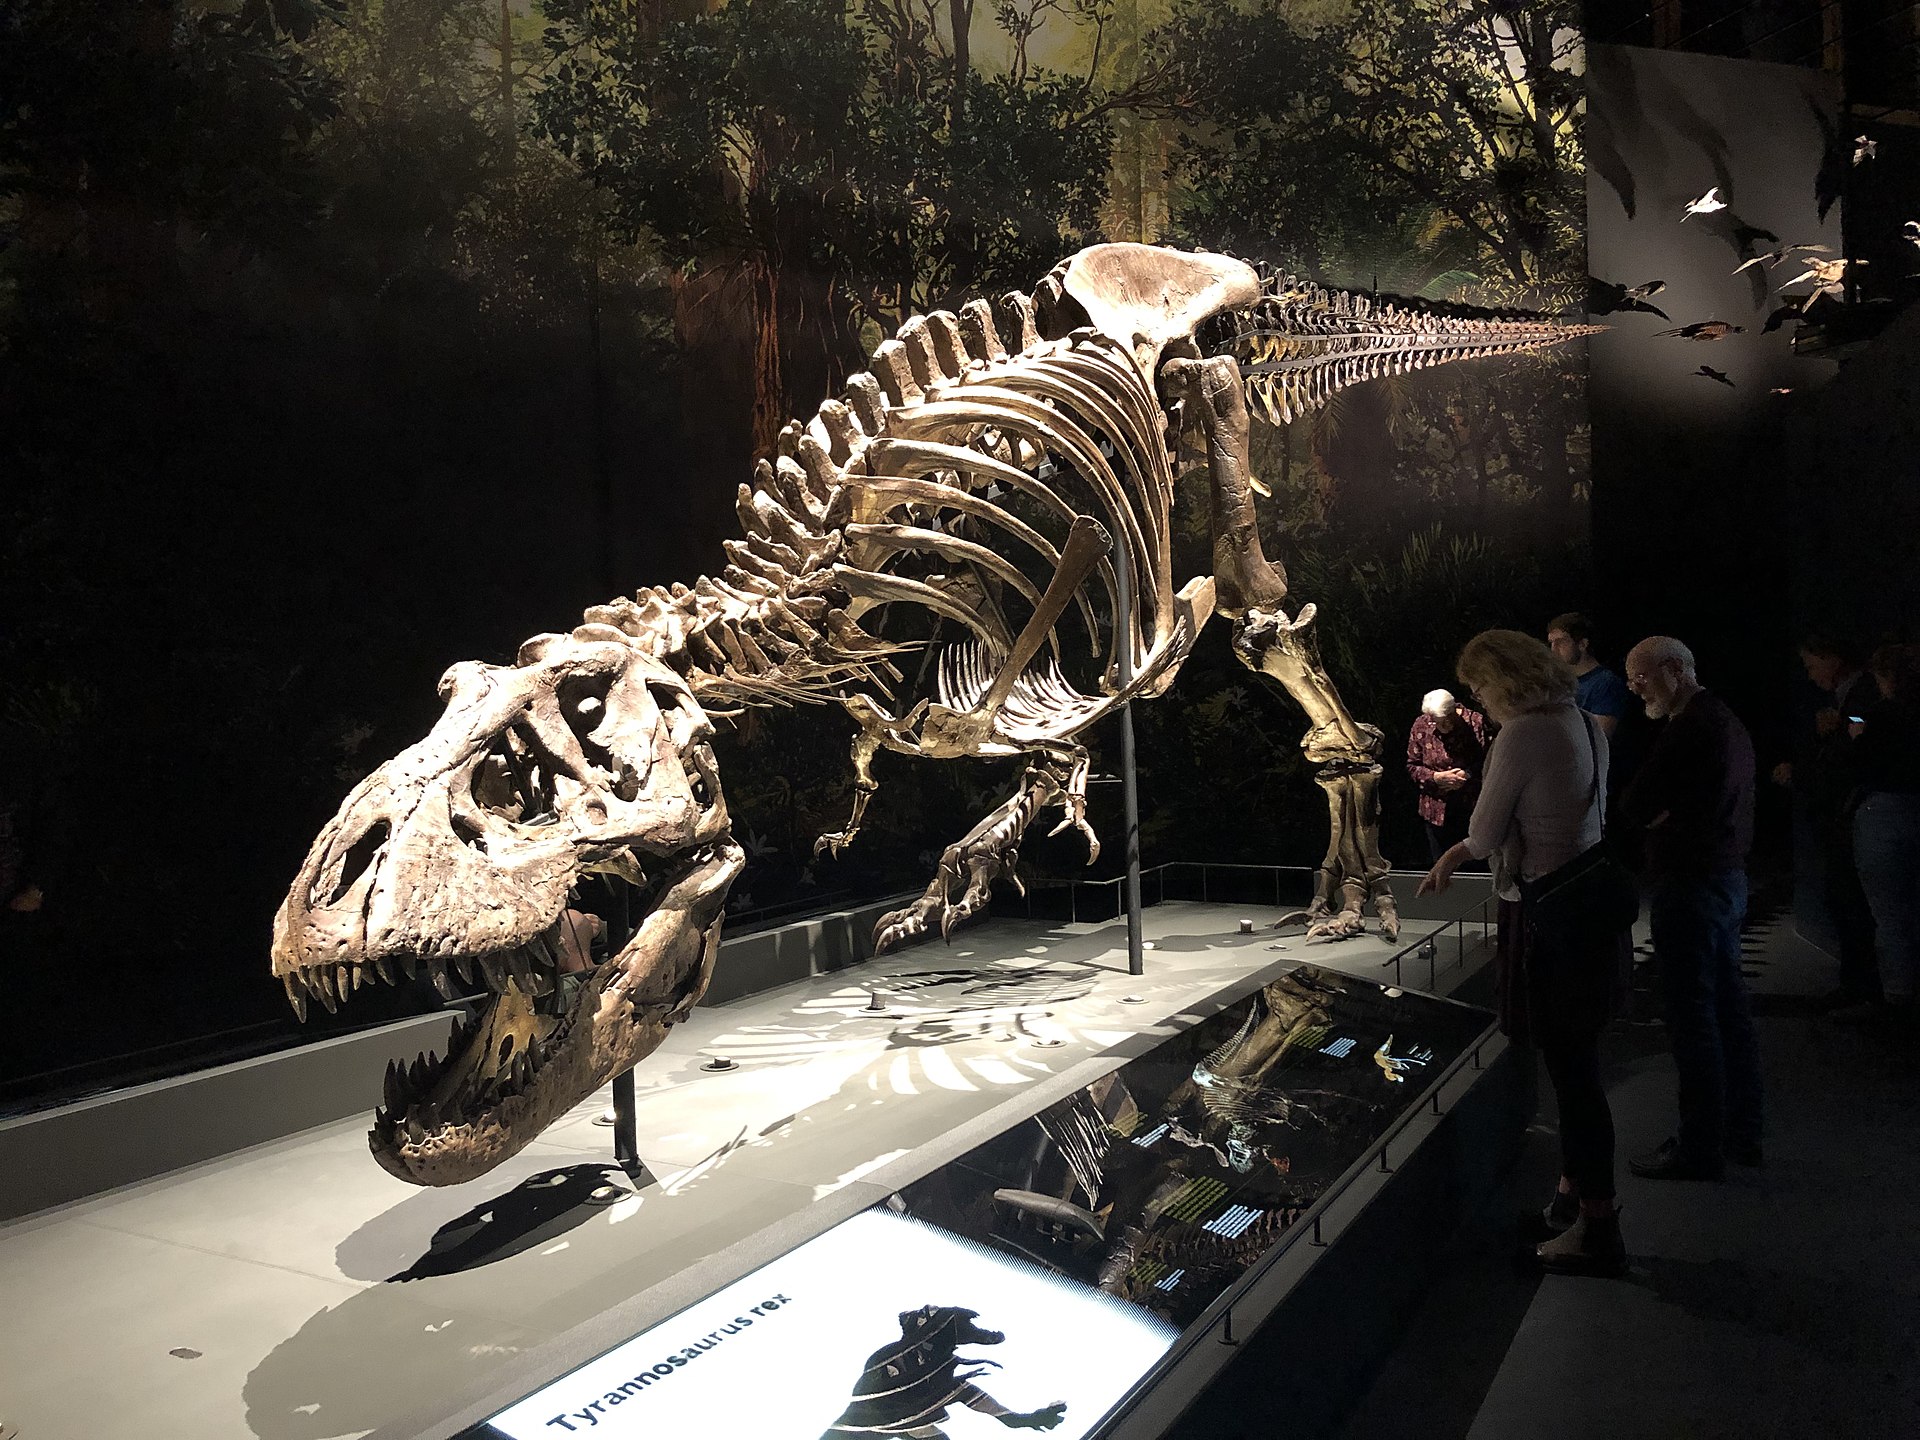 Tyranosauři byli vrcholoví predátoři, schopní úspěšně zaútočit na většinu živočichů ve svém okolí. Jejich preferovanou kořistí byli patrně až několikatunoví kachnozobí edmontosauři, potažmo nebezpečnější ceratopsidi triceratopsové. To ale neznamená, 